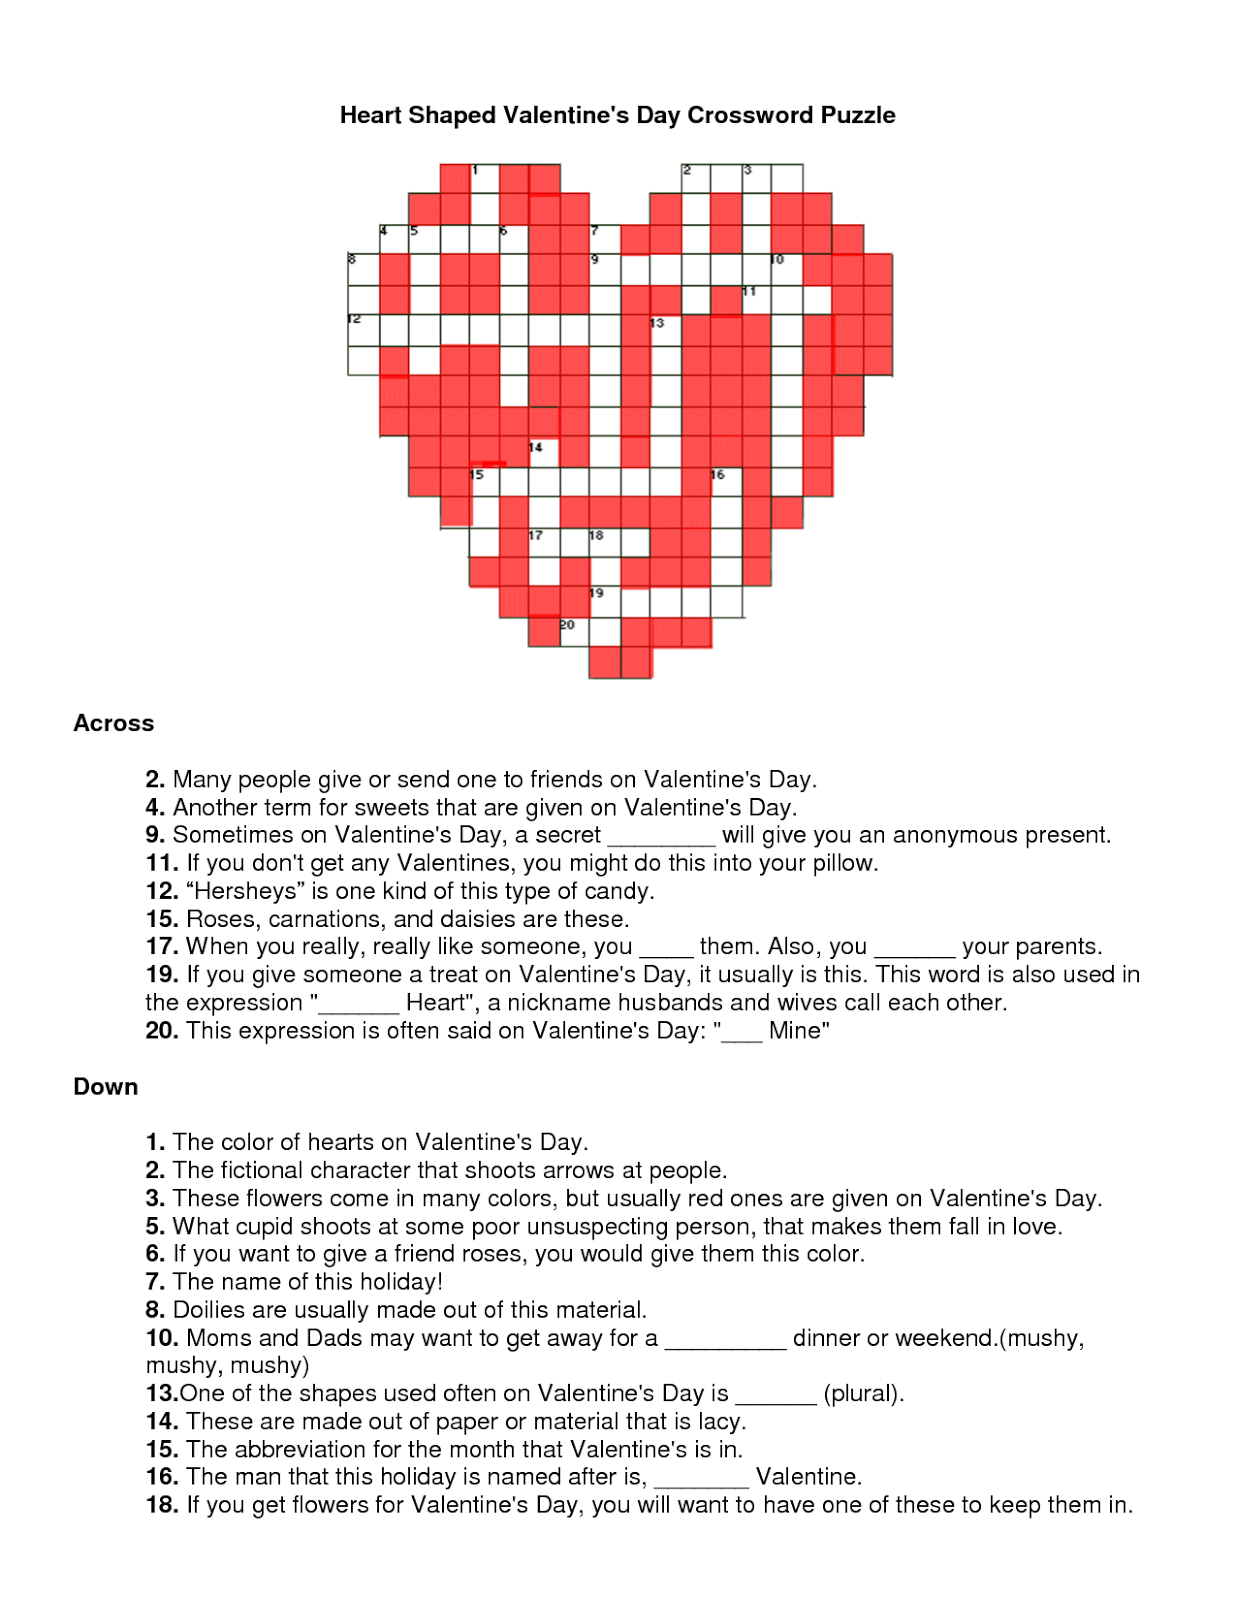 Free Printable Valentine's Day Crossword Puzzles